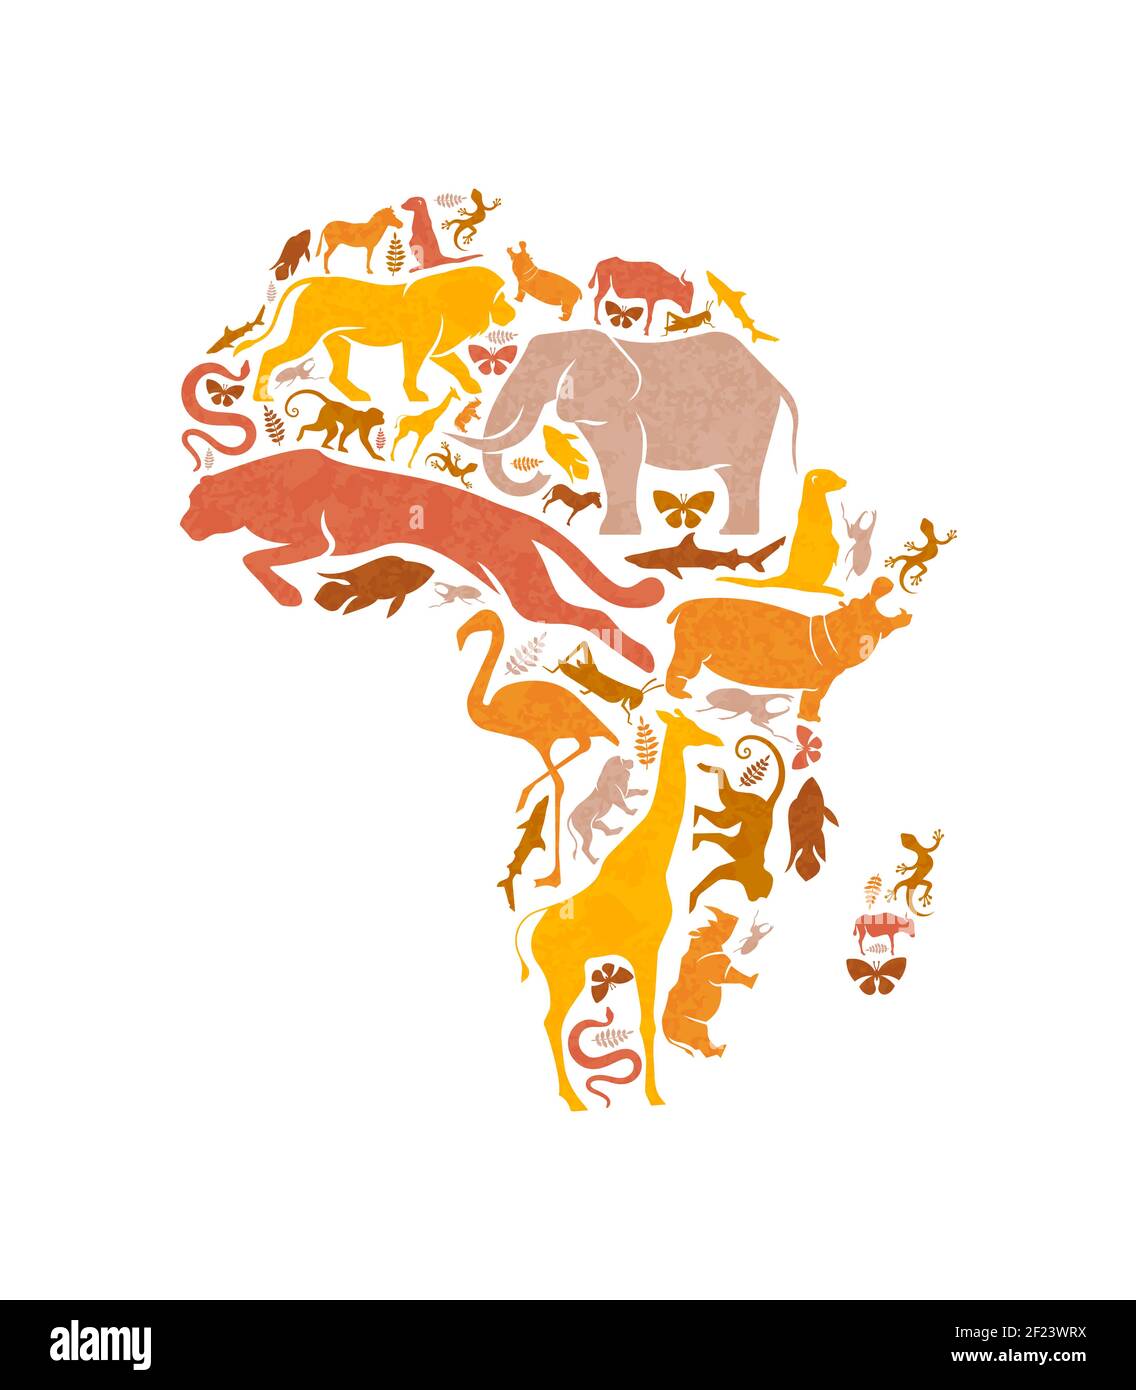 Verschiedene afrikanische Tierformen machen afrika Kontinent Kartenform auf isolierten weißen Hintergrund. Safari Tiere Silhouette Illustration für wildes Leben con Stock Vektor